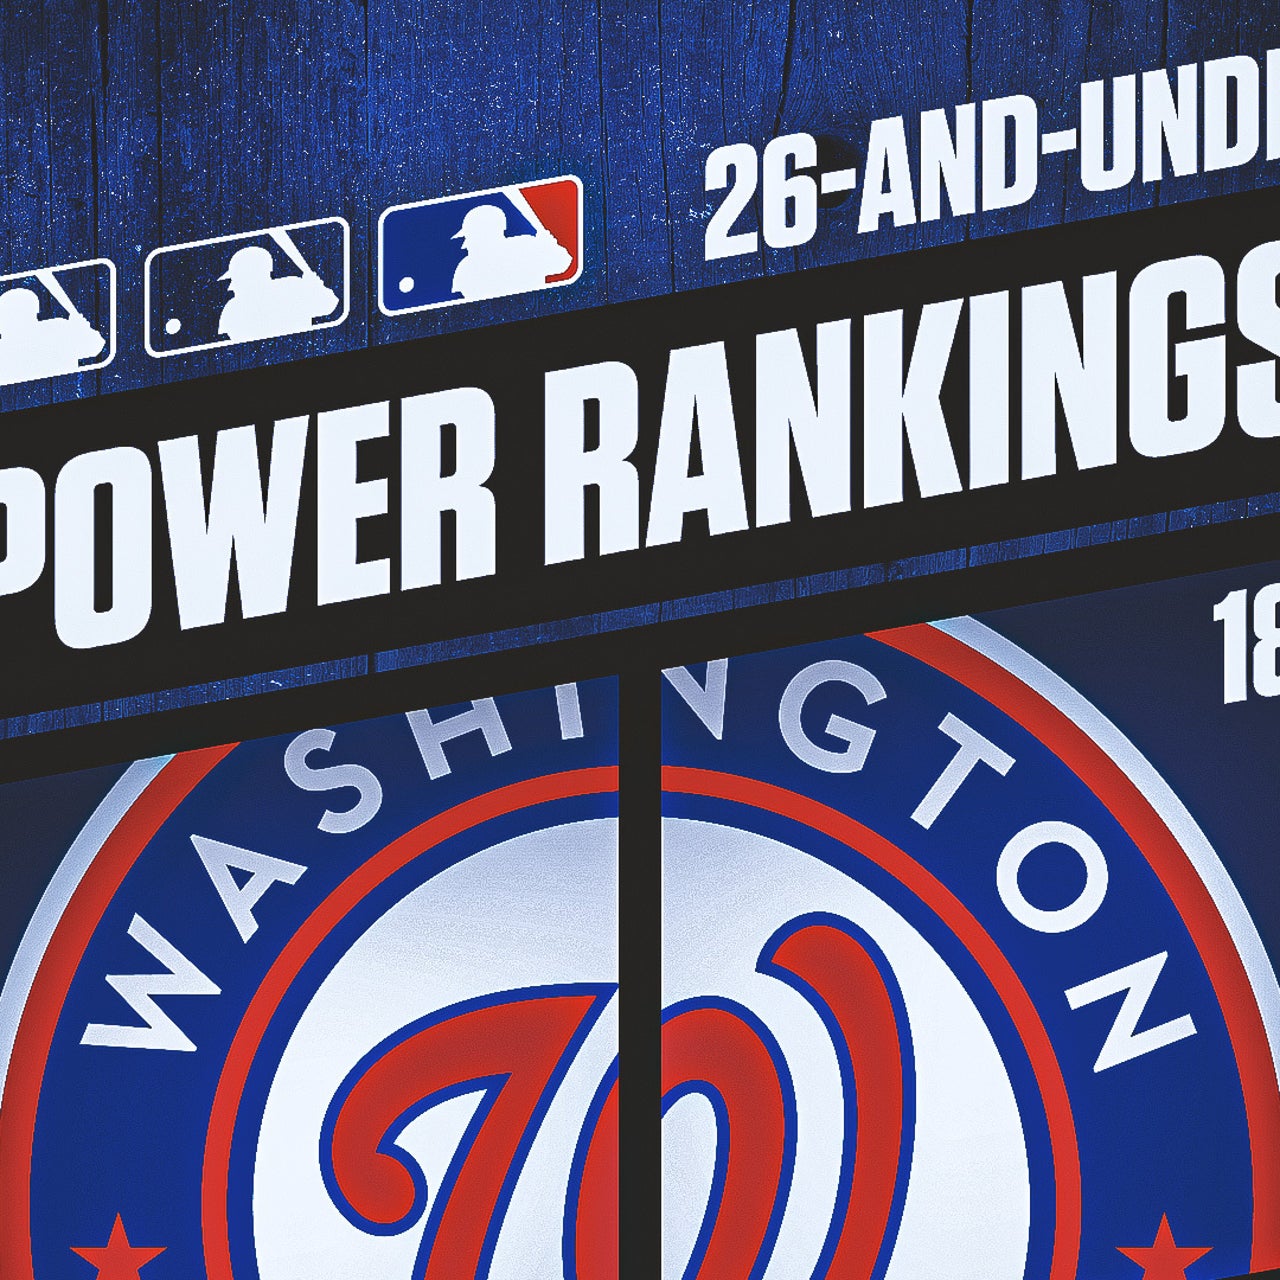 MLB 26-and-under power rankings: No. 18 Washington Nationals